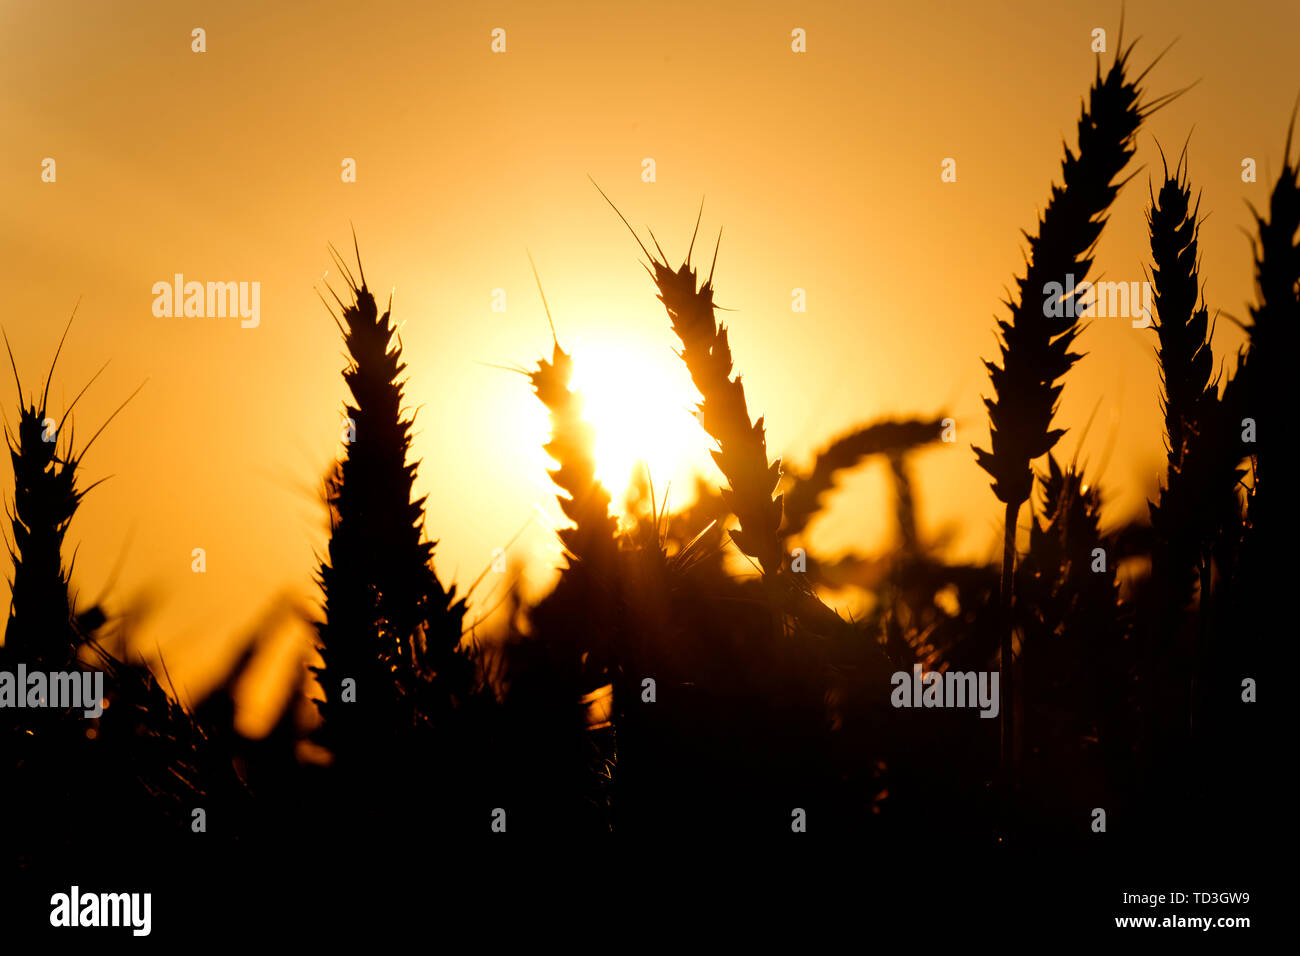 Weizen Silhouetten gegen Sonnenuntergang Himmel Stockfoto